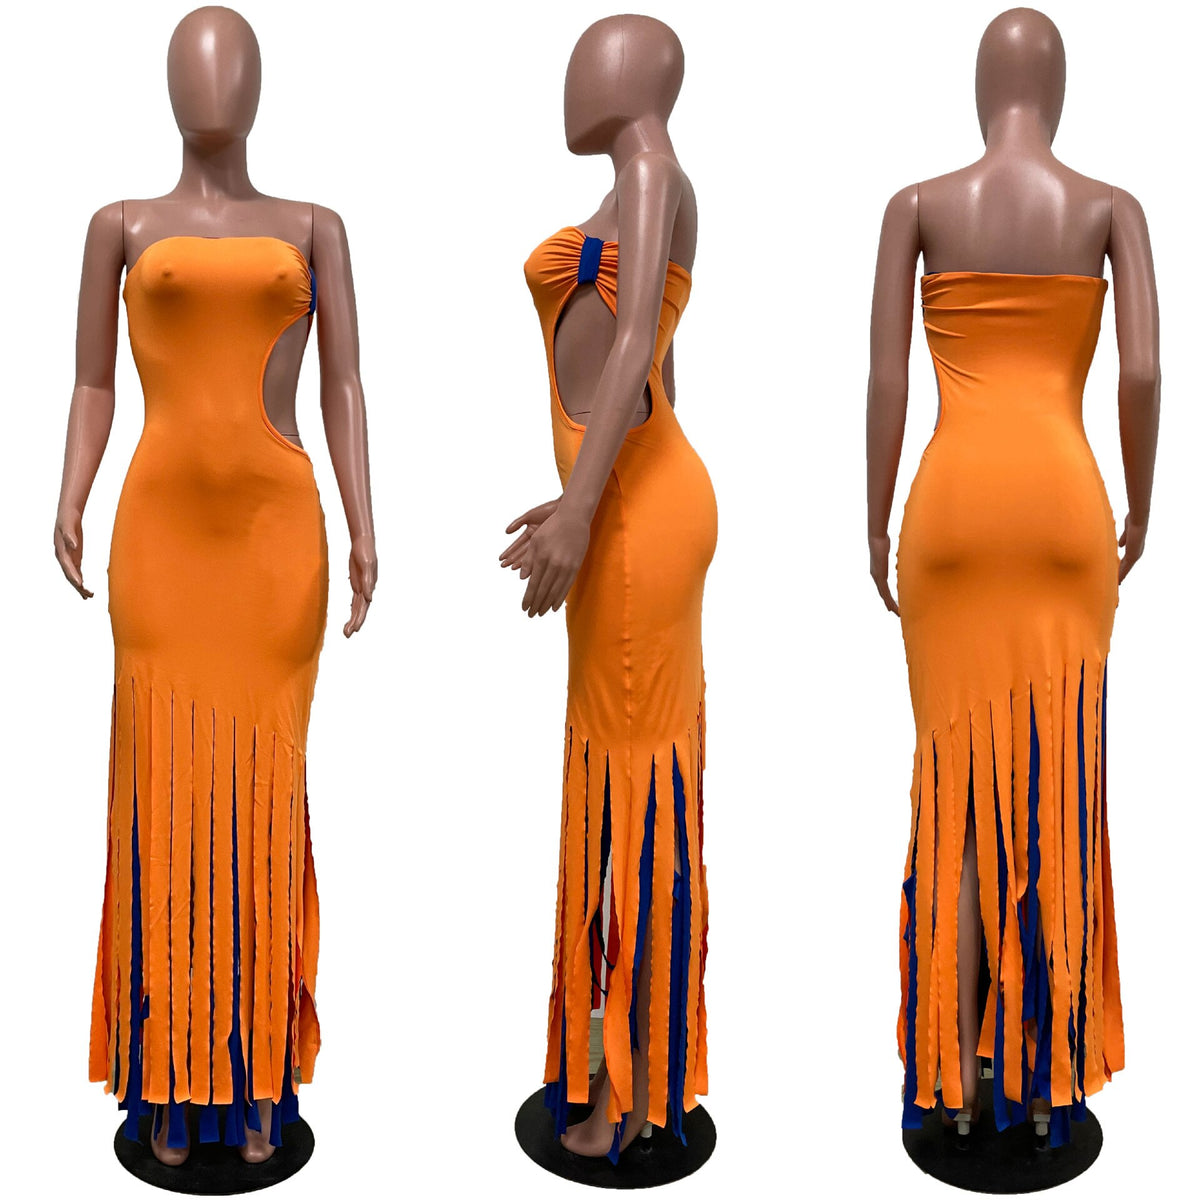 Wrap Brust Maxi Kleid Frauen Sexy Fransen Kleid Eine Seite Taille Ausschnitt Körper-Gestaltung Femal Streetwear Kleider Vestido